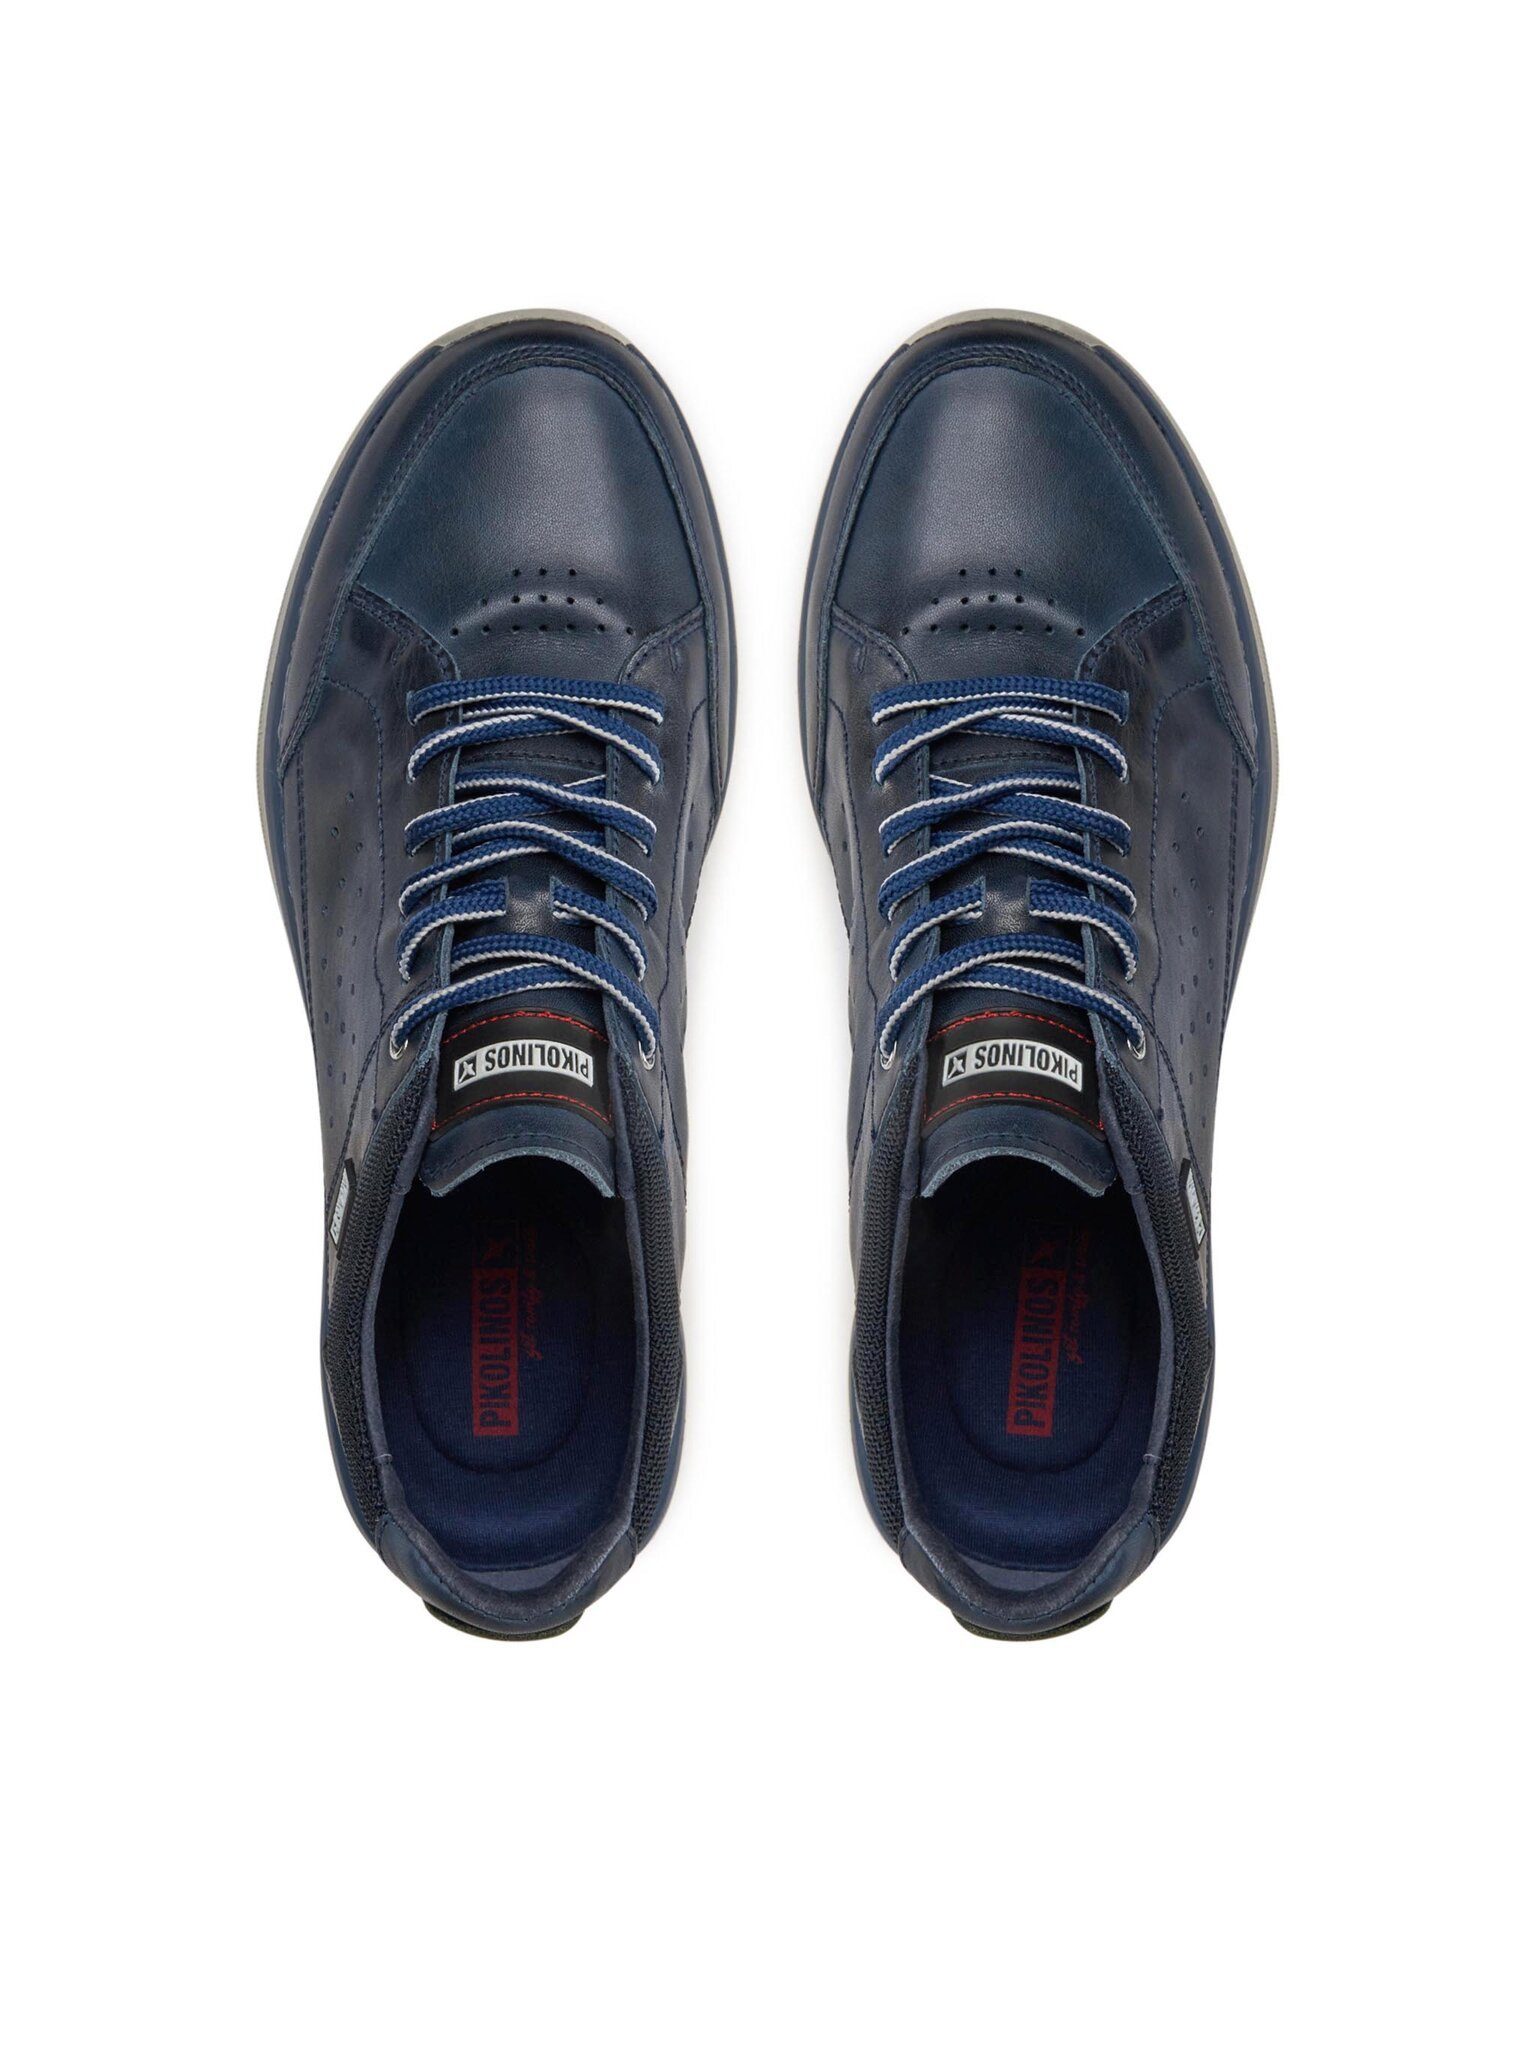 PIKOLINOS Sneakers Biar M6V-6105 Blue 300 Sneaker